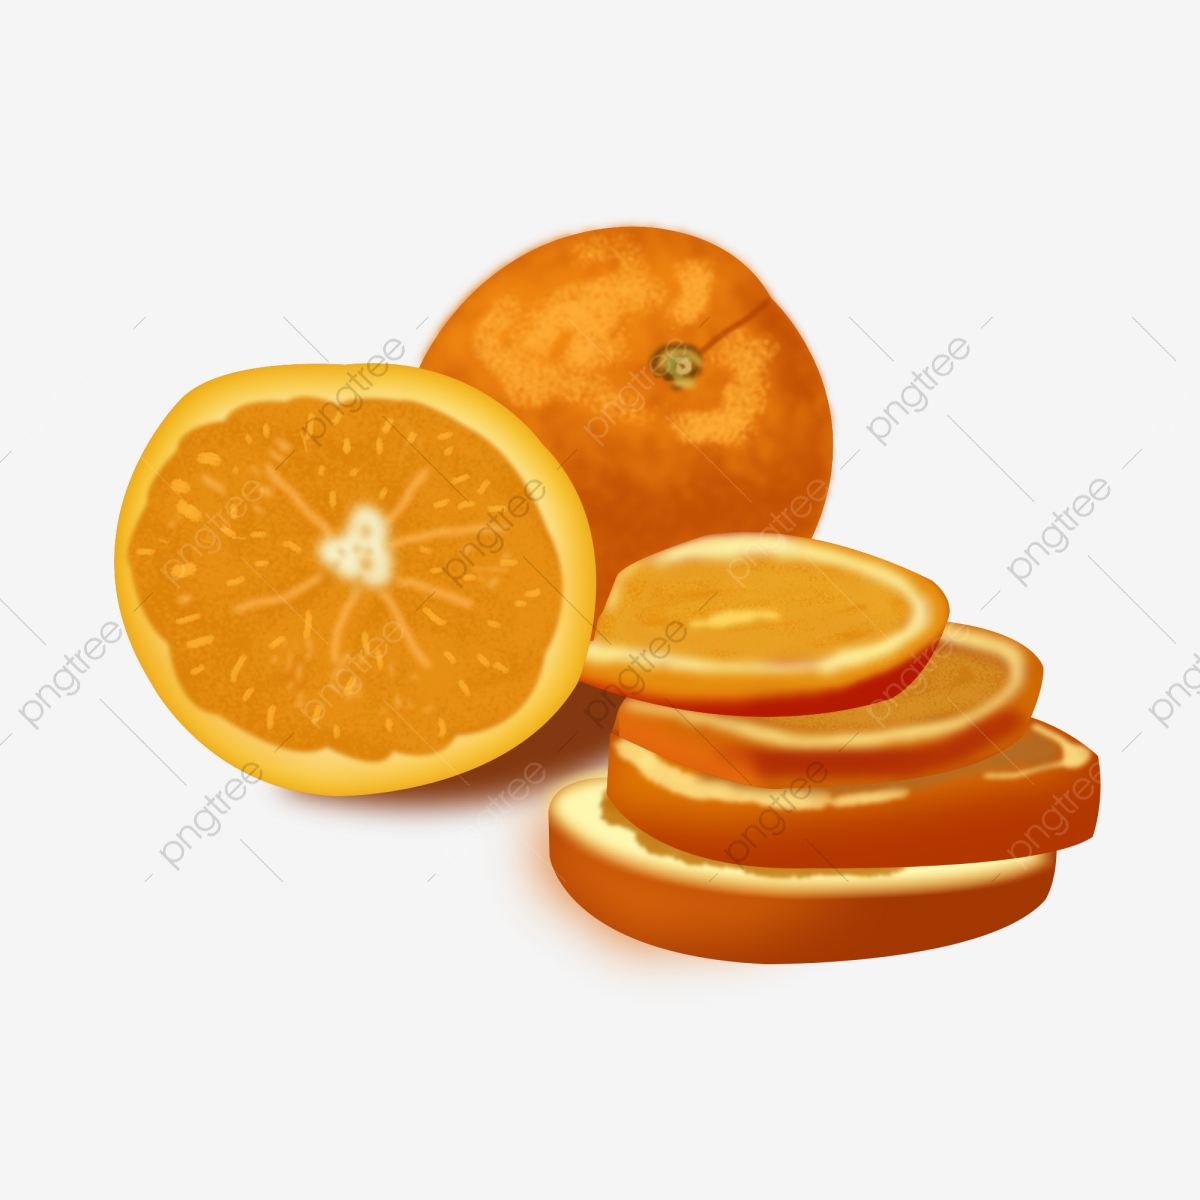 oranges clipart summer